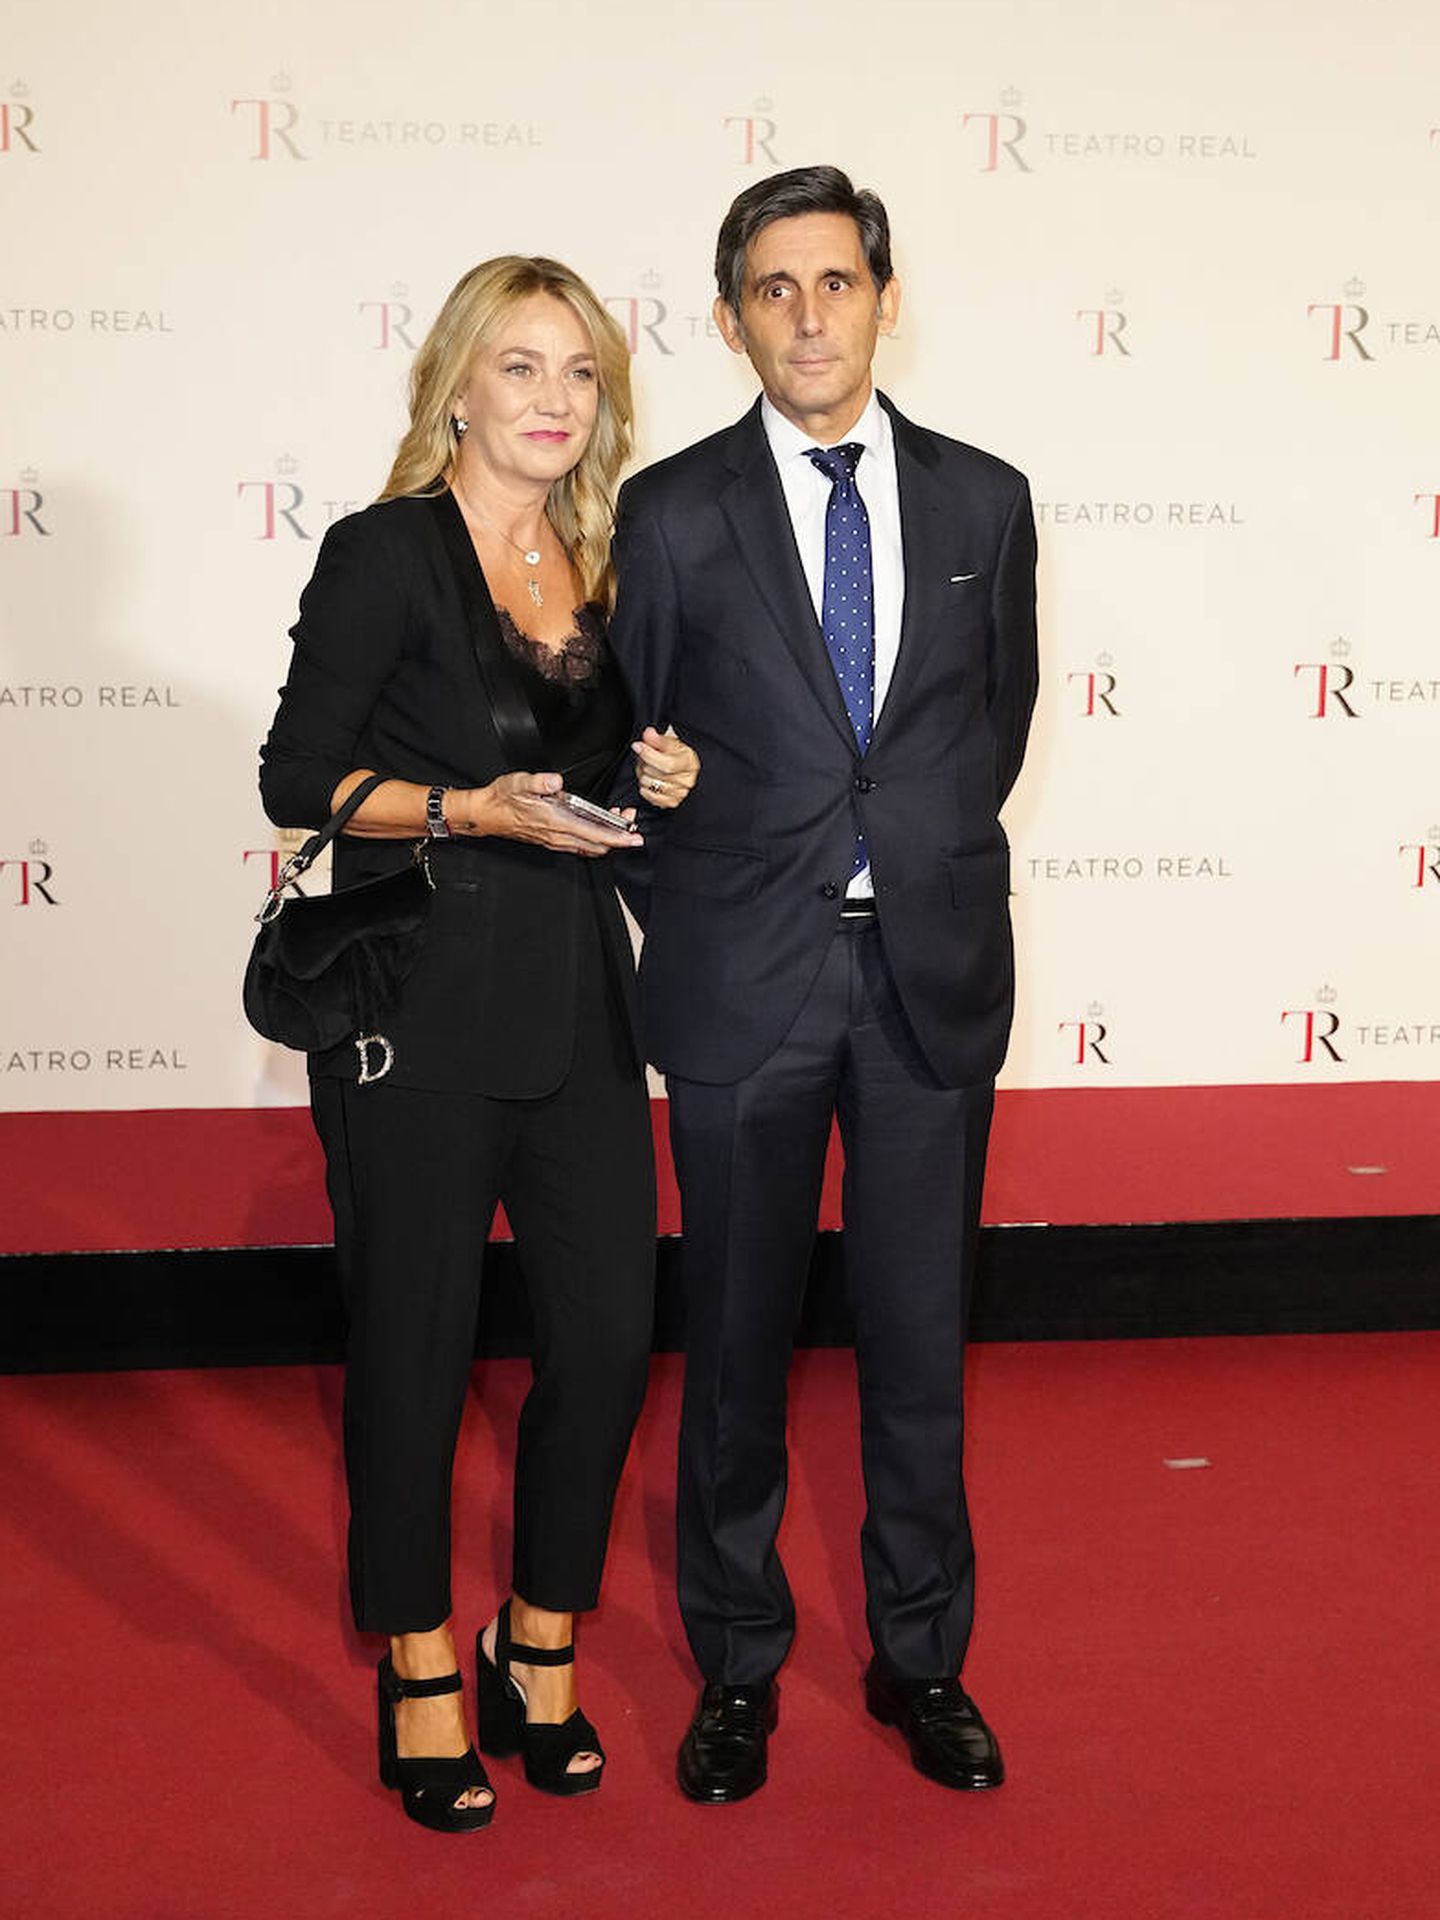 Cuqui Samaniego y Álvarez-Pallete asisten al estreno de la nueva temporada en el Teatro Real. (Limited Pictures)